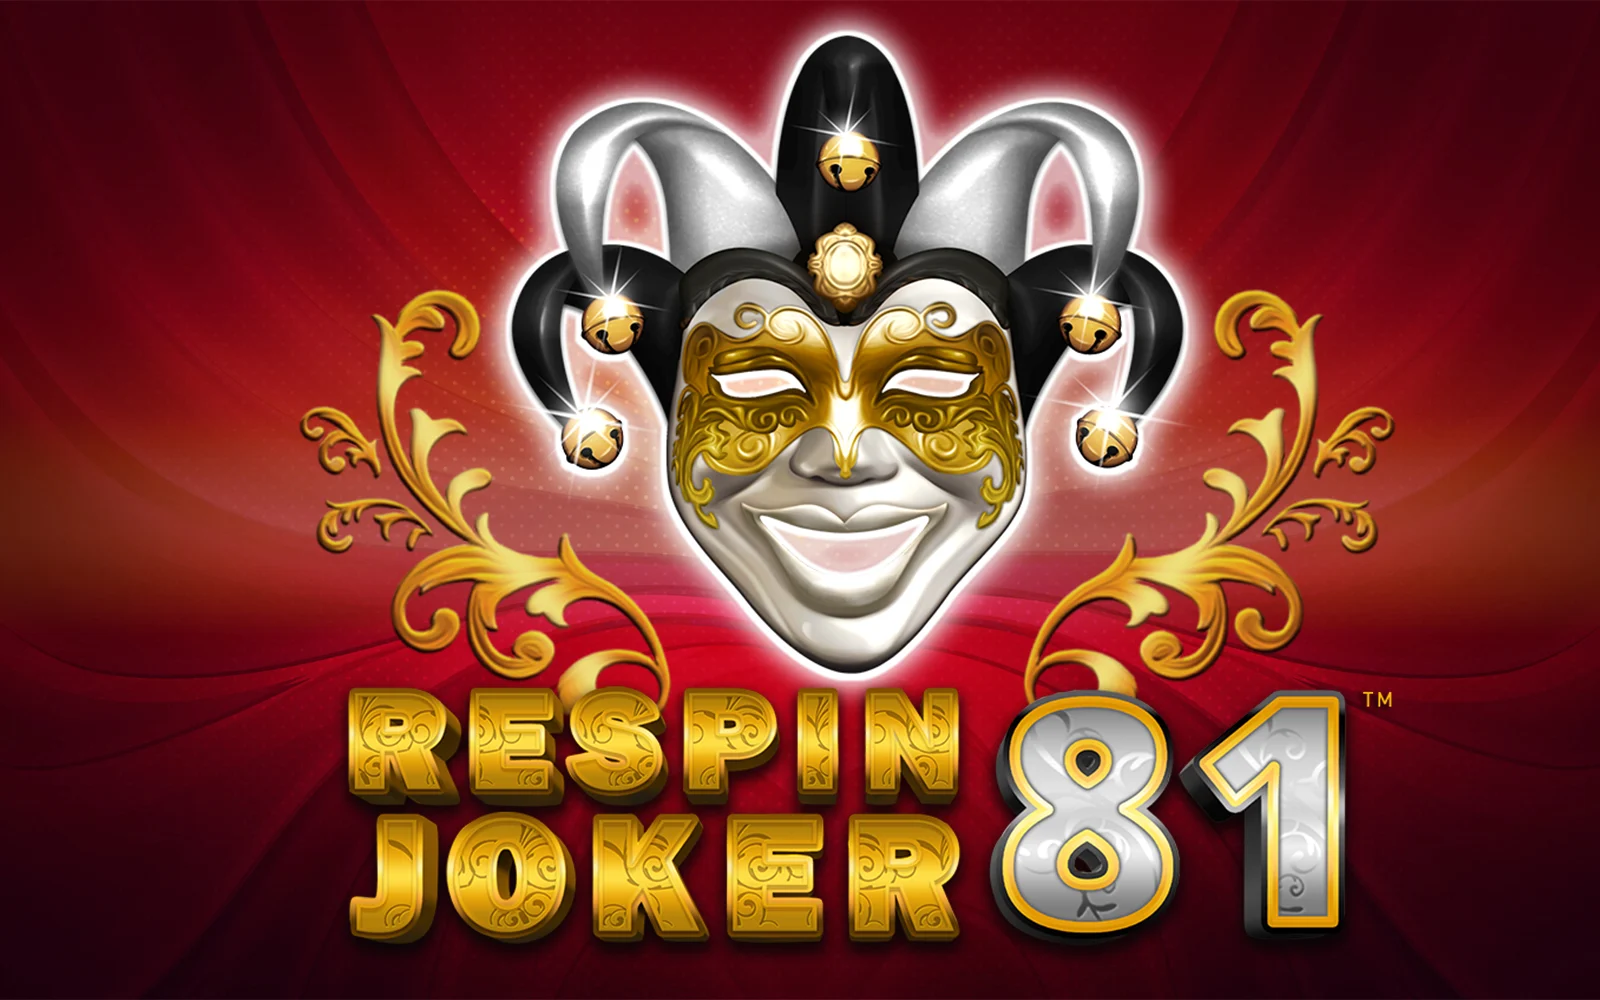 Play Respin Joker 81 on Starcasino.be online casino